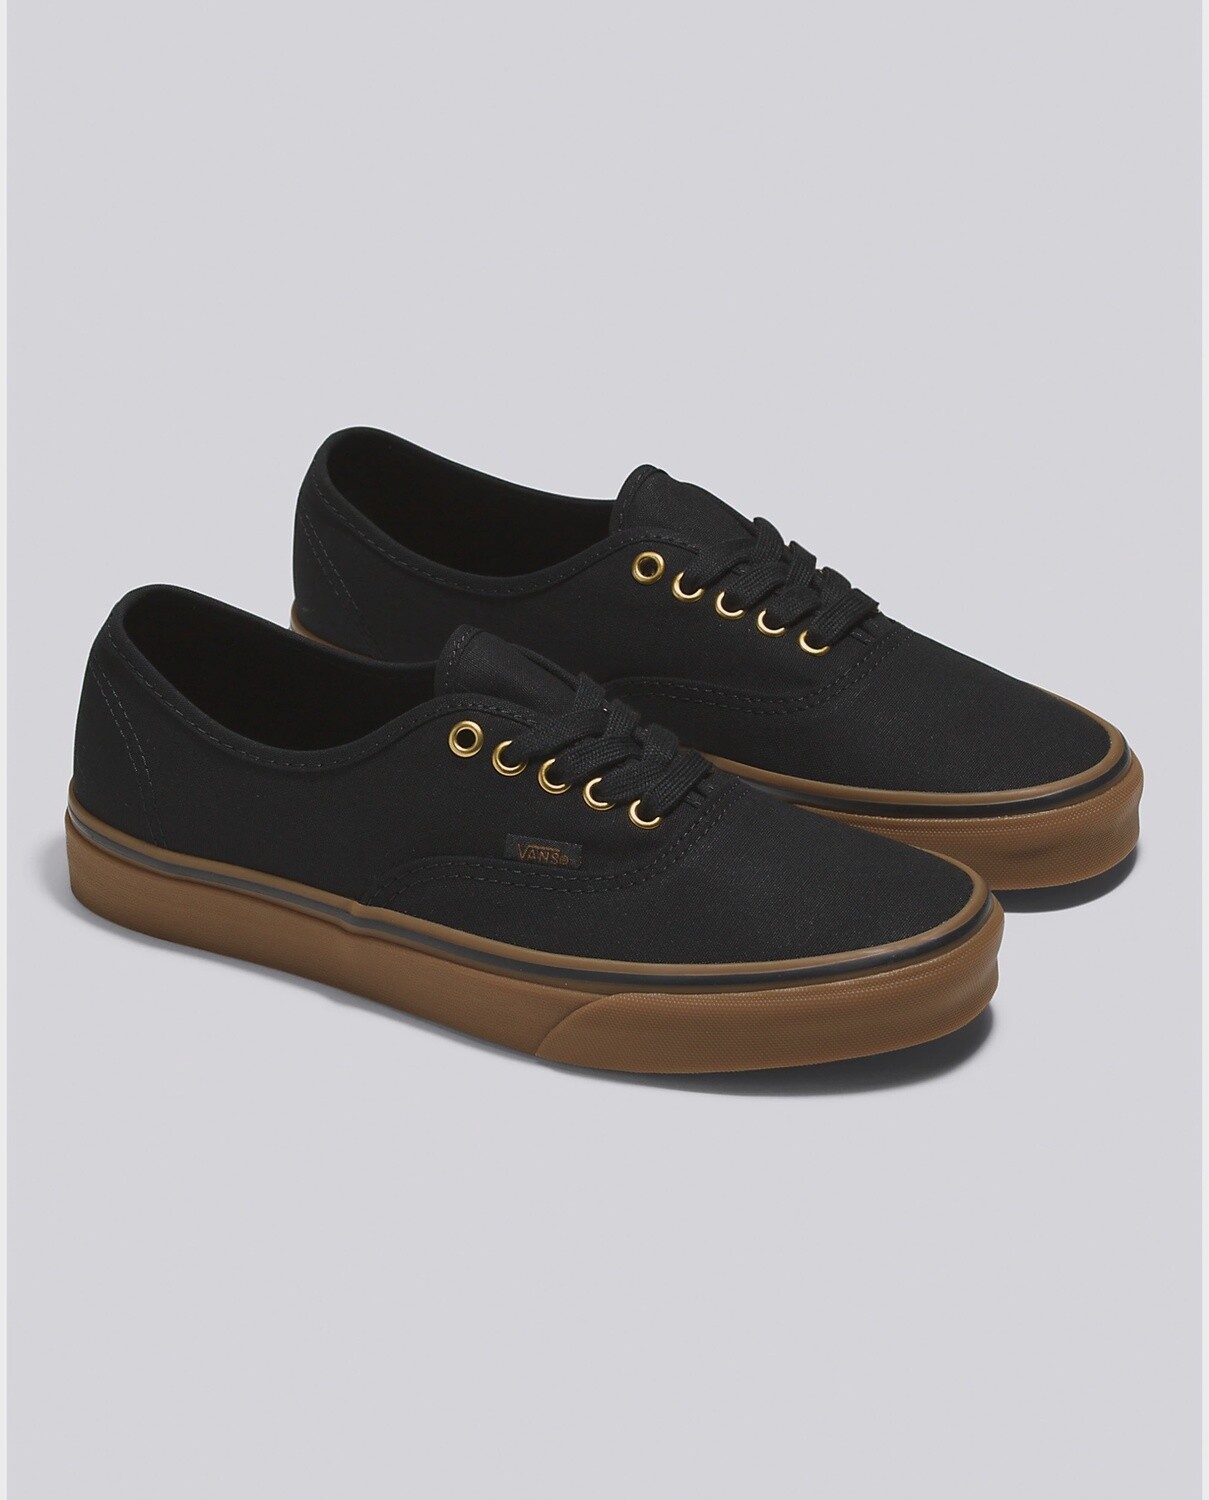 Vans Authentic Black Gum Shoes